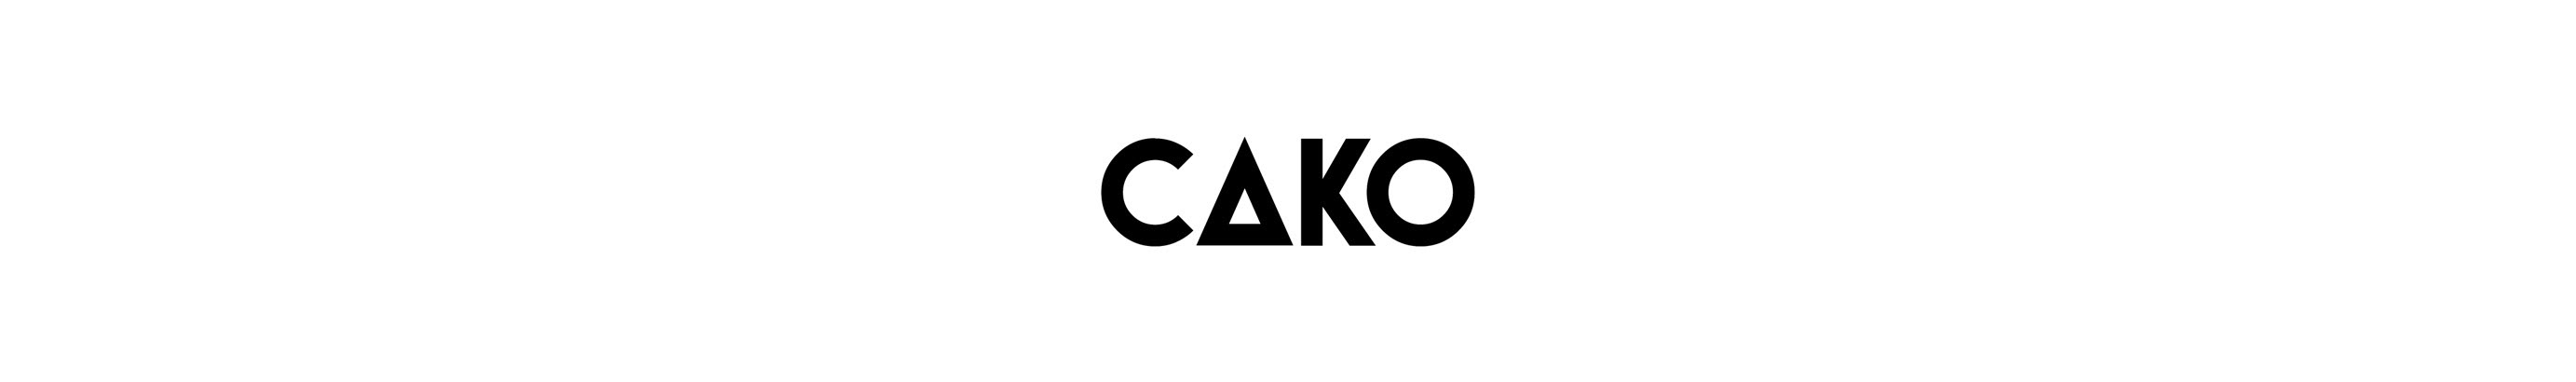 Cako Martin's profile banner